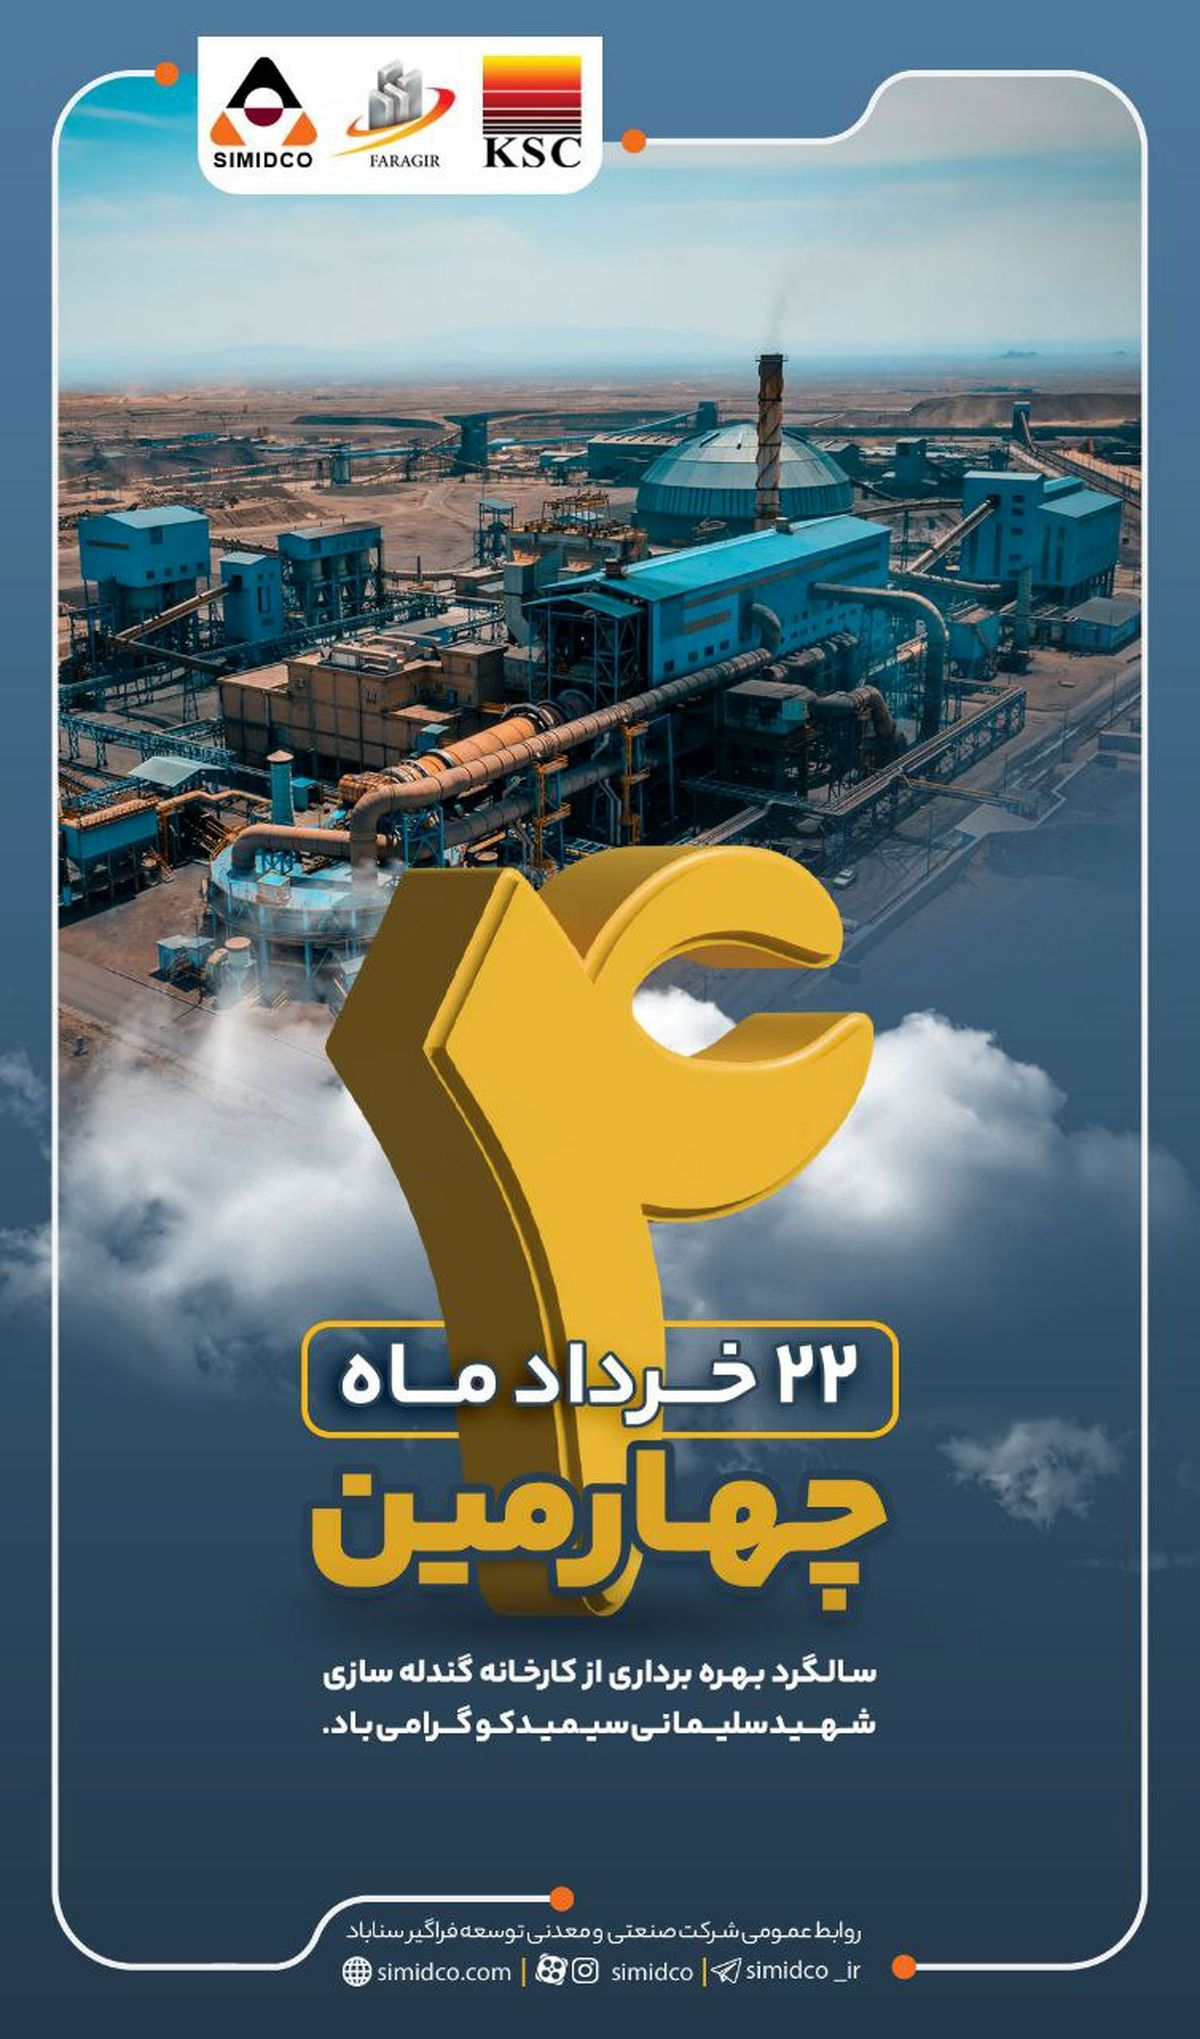 رویداد جدید | برگ زرینی از تاریخ پر افتخار سیمیدکو و گروه فولاد خوزستان